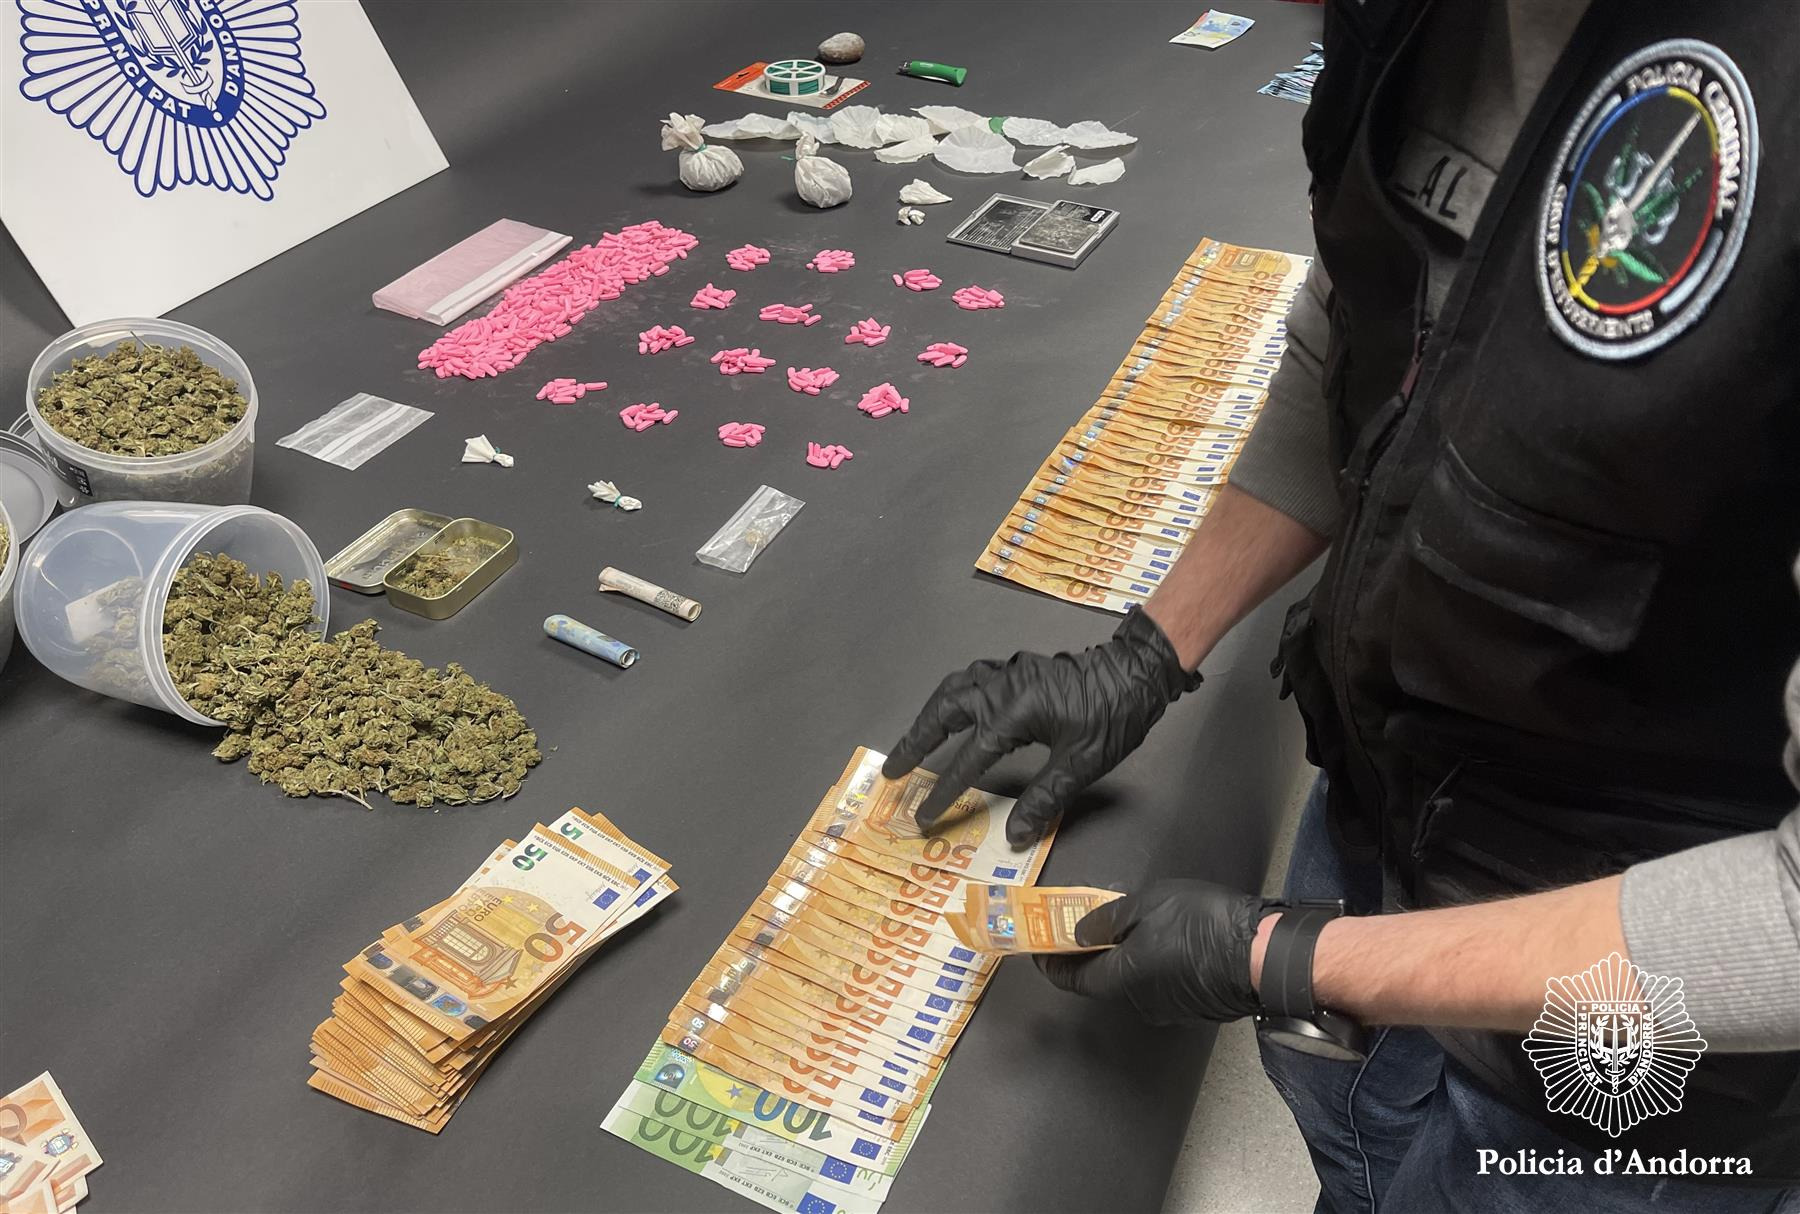 La Policia desmantella un important punt de venda de droga a Canillo amb tres detencions i el comís de més de 500 pastilles